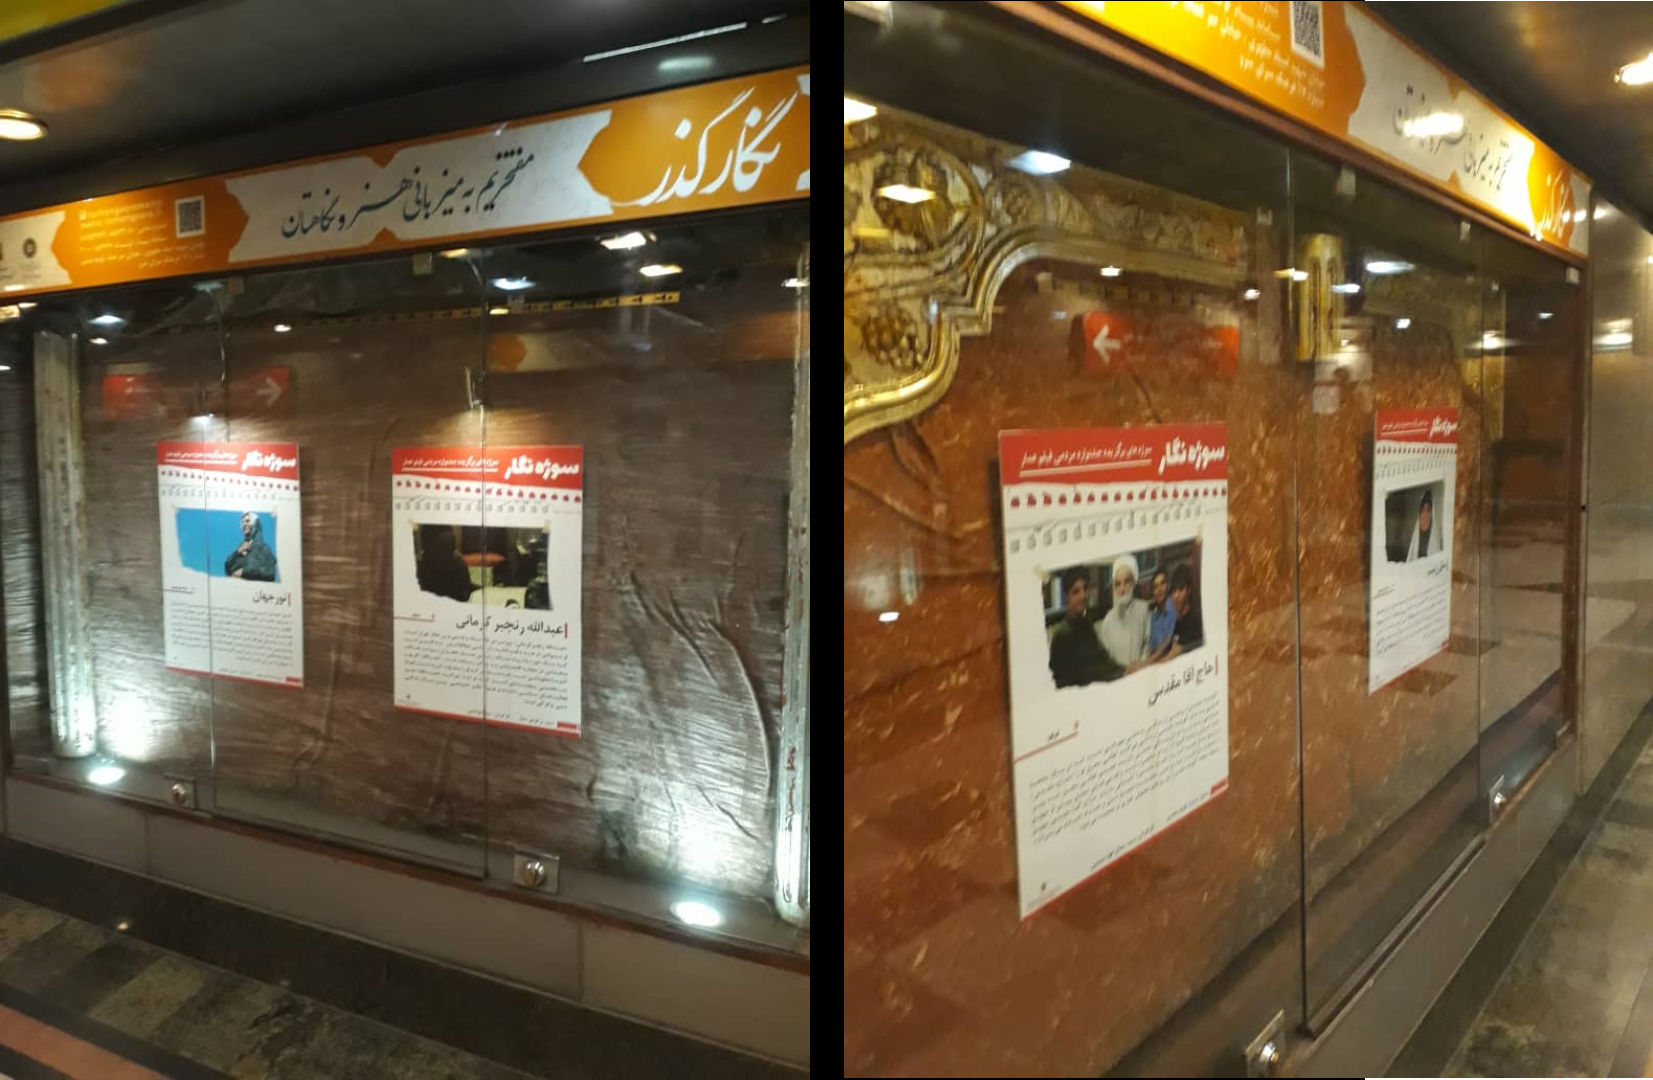 نمایشگاه عکس جشنواره عمار در ایستگاه مترو شهید بهشتی برپا شد